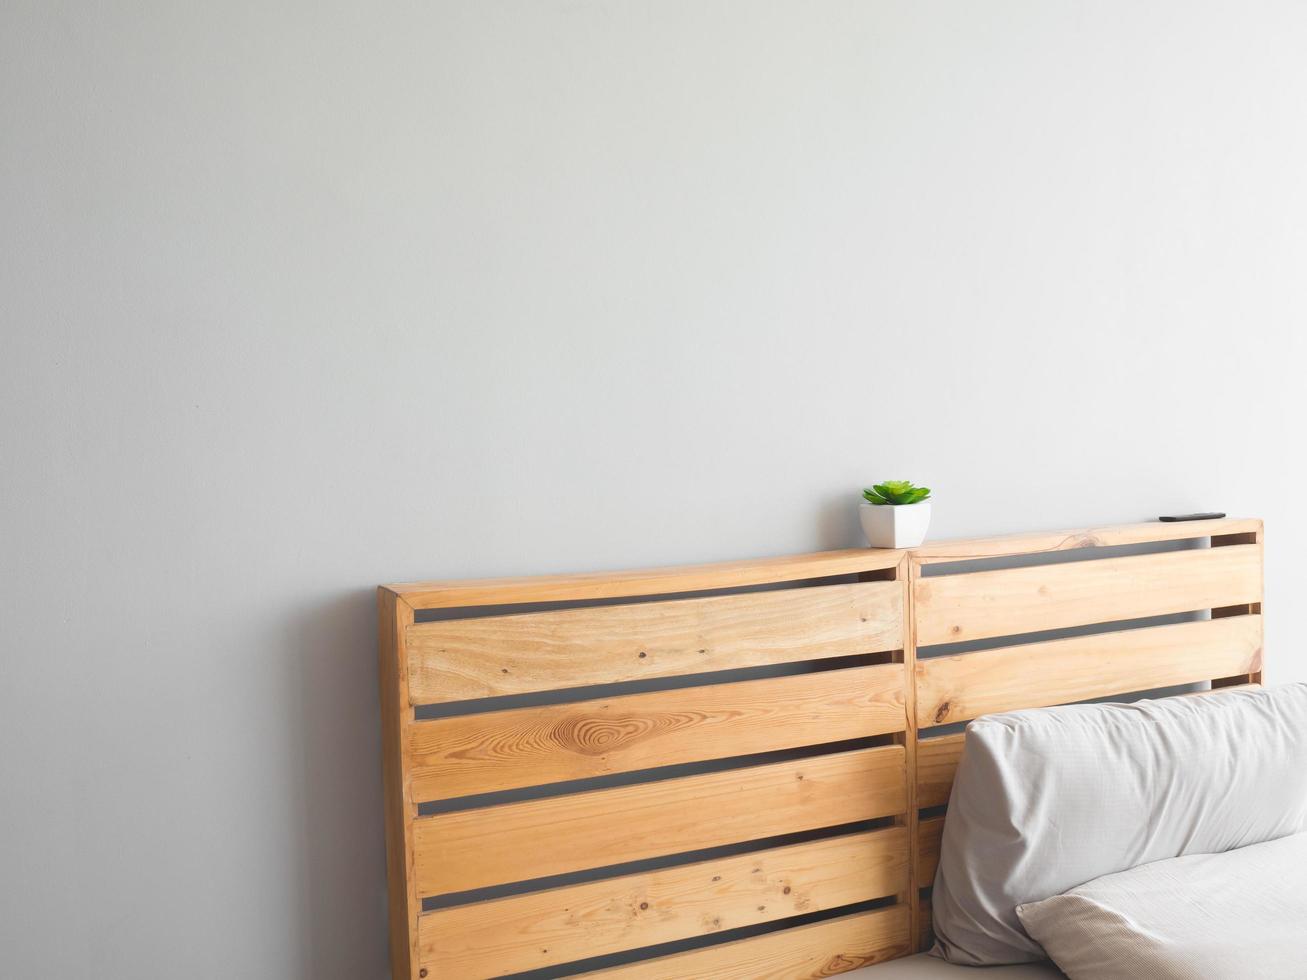 planche en bois du lit supérieur avec plante en pot et mur. photo